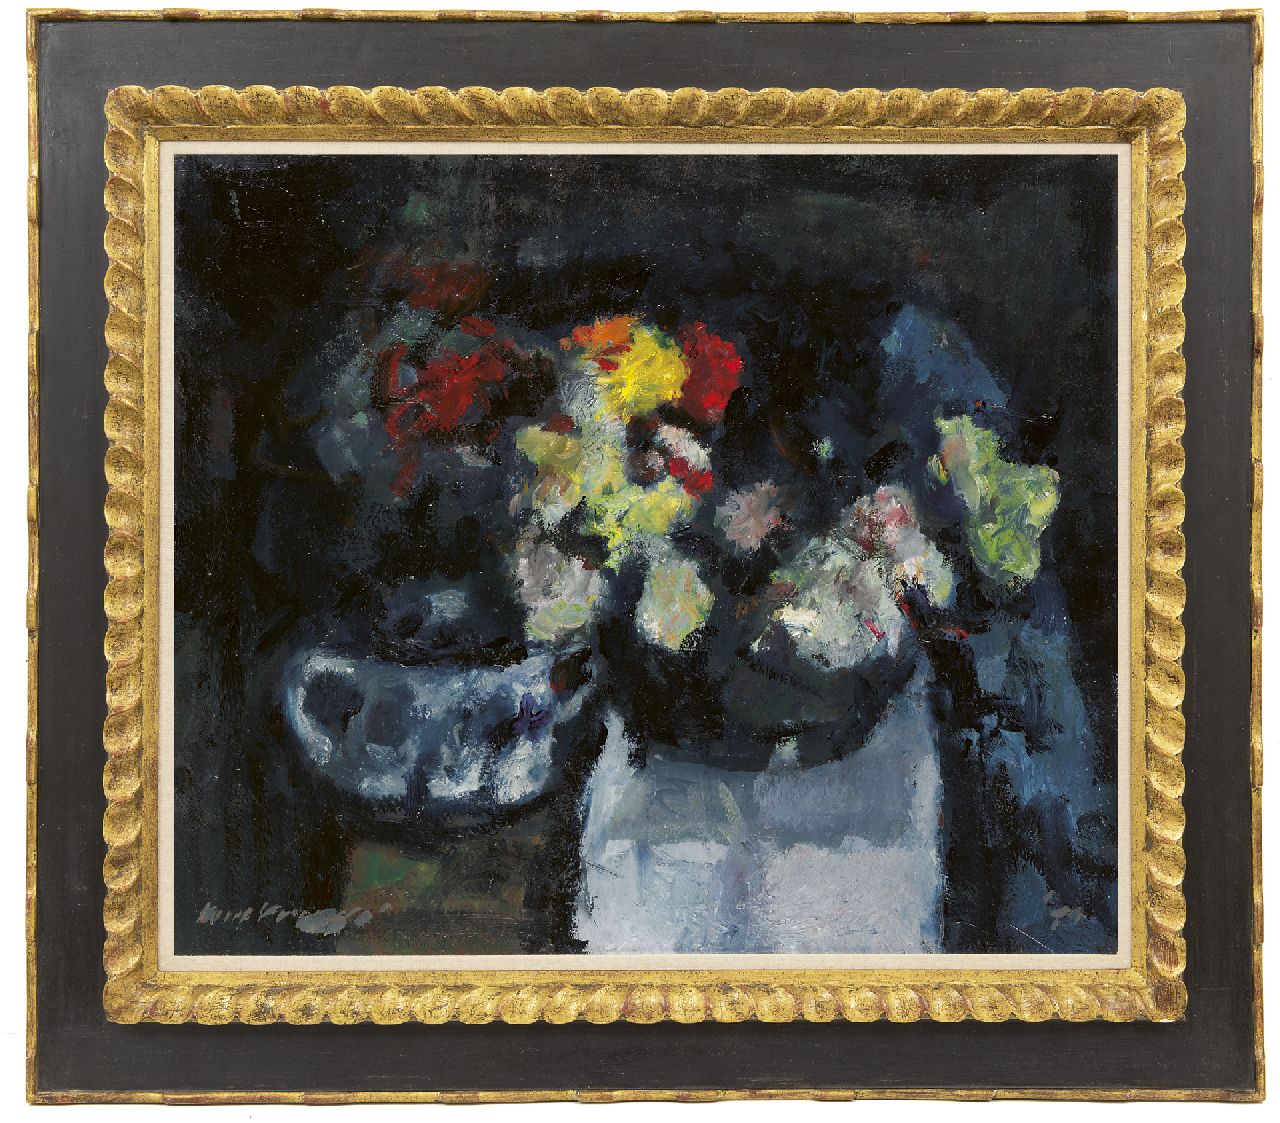 Verwey K.  | Kees Verwey | Schilderijen te koop aangeboden | Bloemen stilleven, olieverf op doek 60,2 x 70,5 cm, gesigneerd linksonder